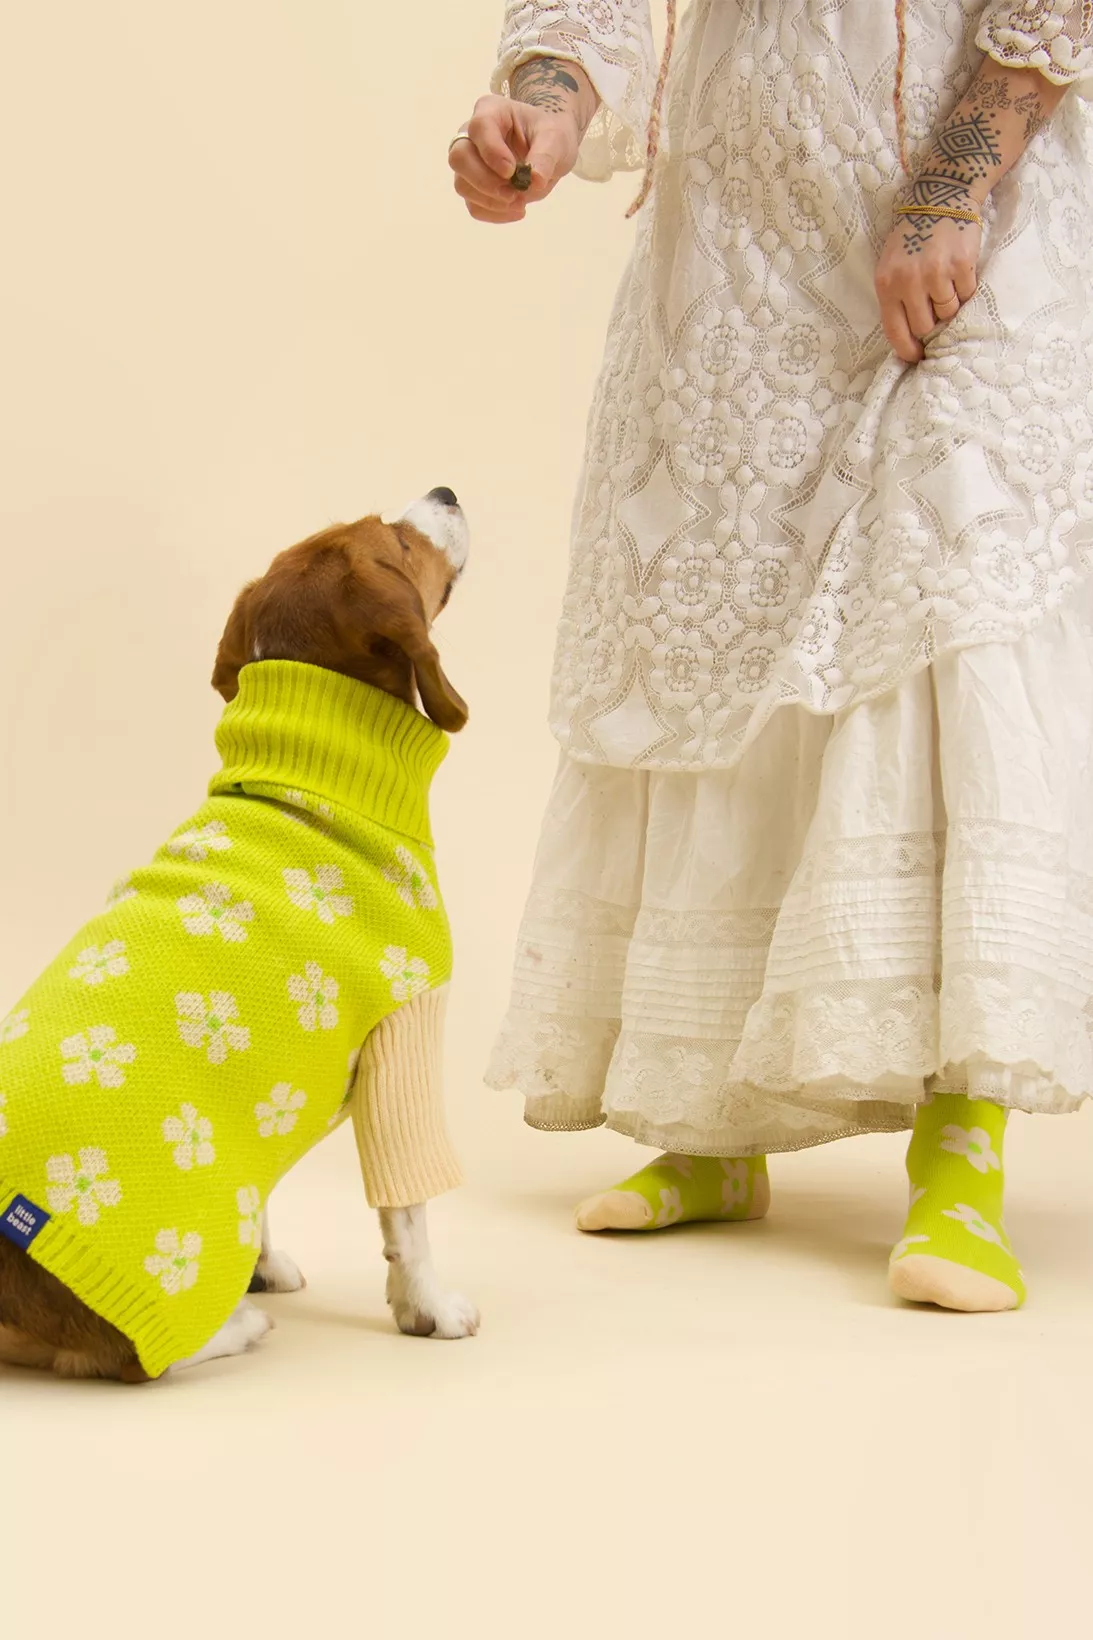 Little Beast выпустили коллекцию одежды для людей и их питомцев: кофточка для собаки (1546 грн) носки (407 грн)